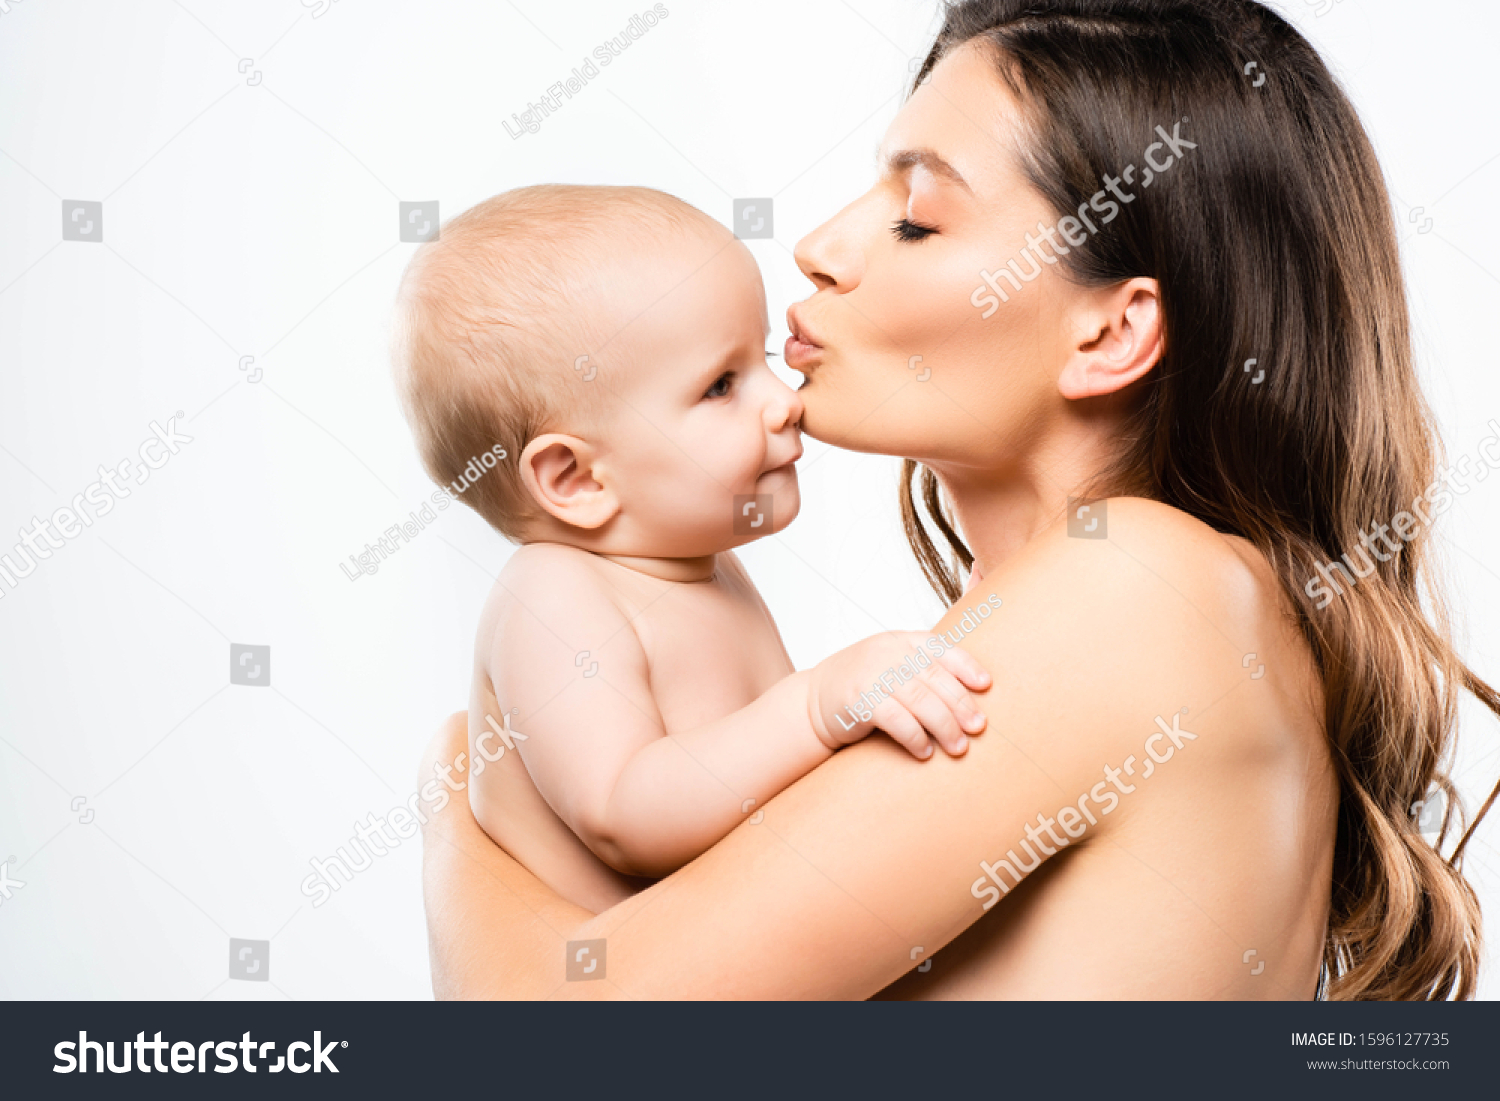 на фото голая мама и ребенок фото 7